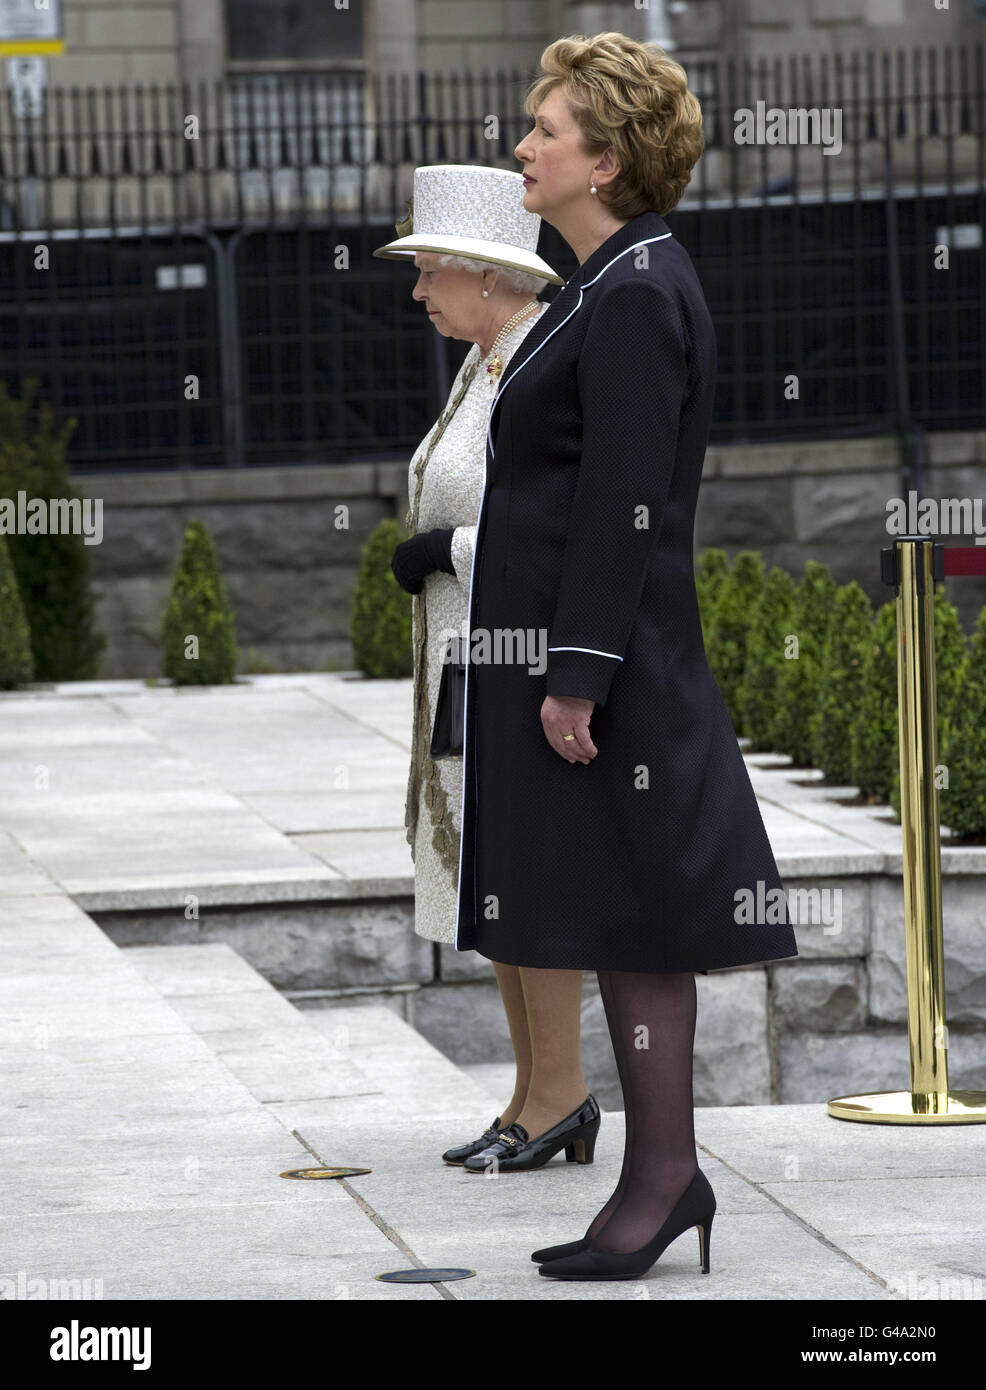 HM Queen Elizabeth II (links) und die irische Präsidentin Mary McAleese halten einen Moment inne, nachdem sie Kränze im Garden of Remembrance im Stadtzentrum von Dublin niedergelegt haben, der all jene ehrt, die für die irische Freiheit von der britischen Herrschaft gekämpft haben. Stockfoto